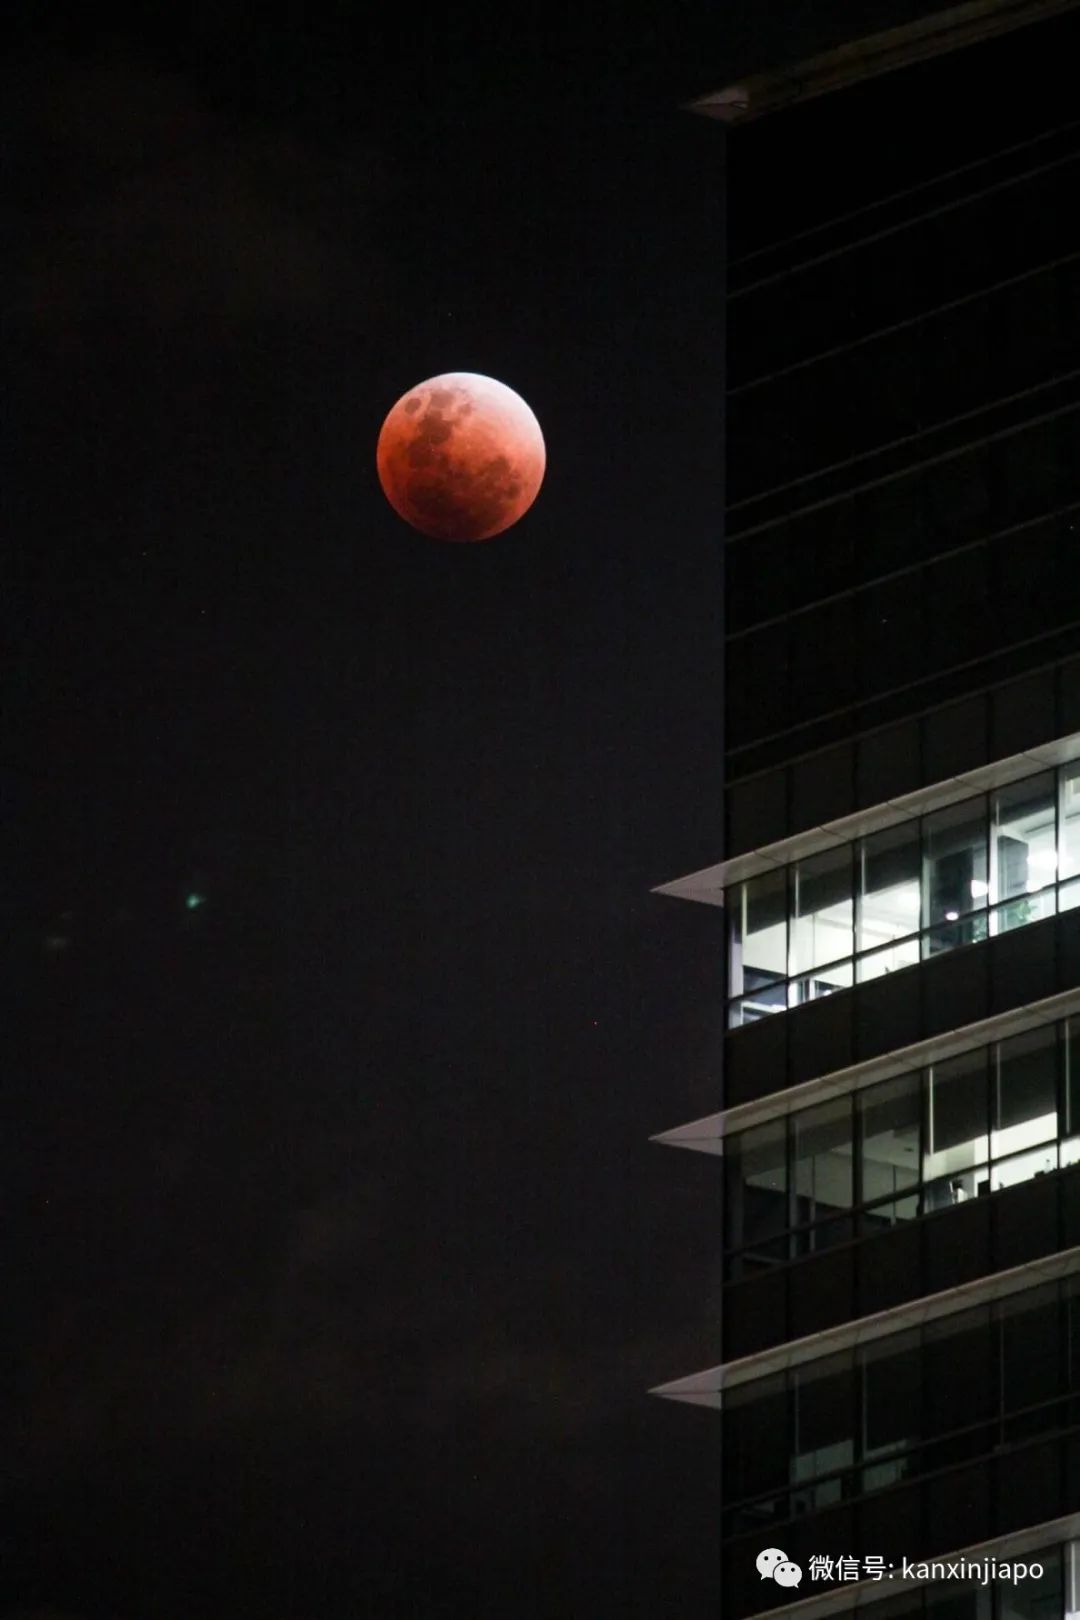 超级血月现身新加坡夜空,高清大图请查收